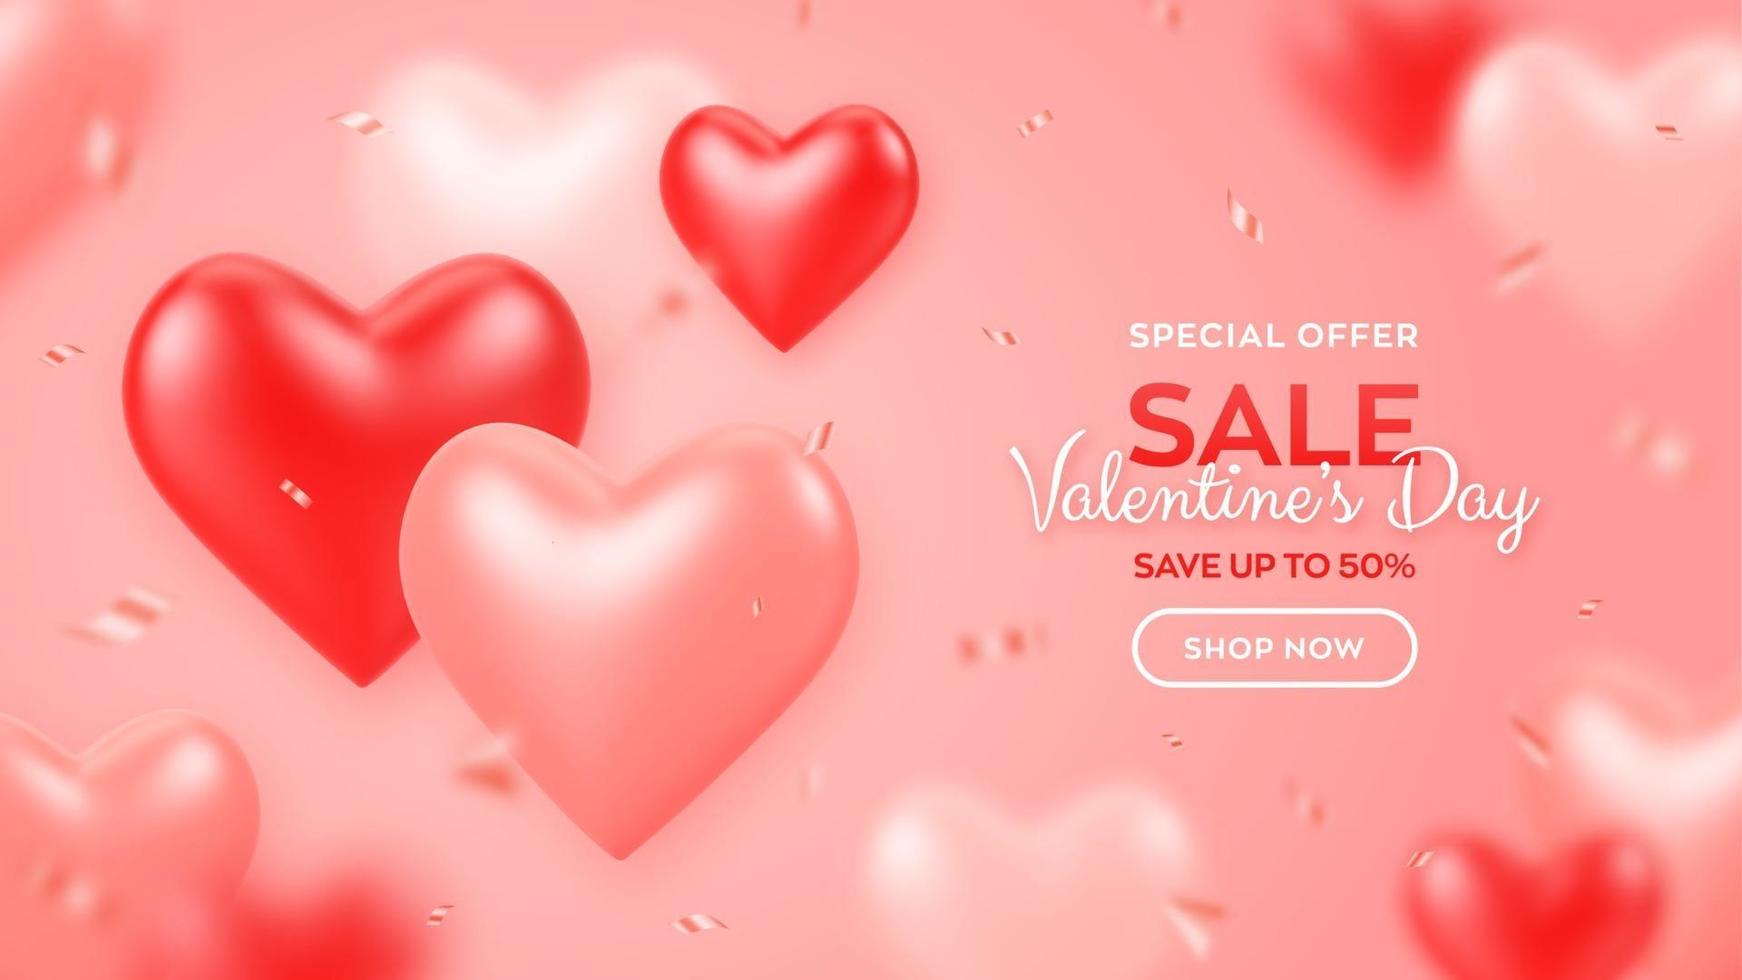 fijne Valentijnsdag. Valentijnsdag verkoop banner met rode en roze ballonnen 3d harten en confetti. achtergrond, behang, flyer, uitnodiging, poster, brochure, wenskaart. vector